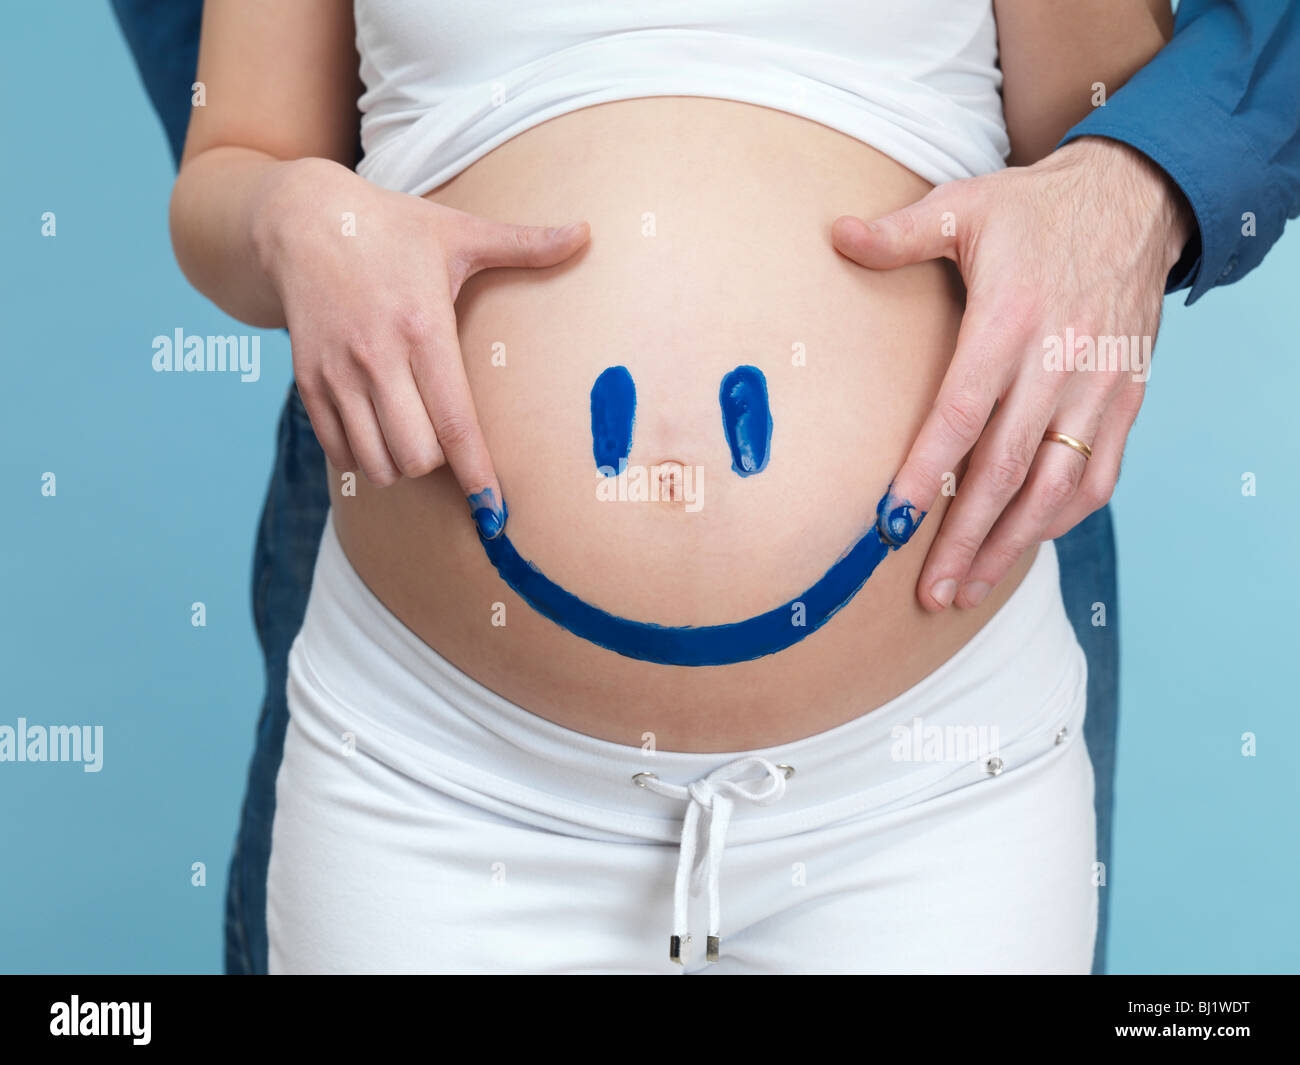 Lizenz erhältlich unter MaximImages.com - schwangere junge Frau und ihr Mann malen ein fröhliches Smiley Gesicht auf ihren Bauch. Stockfoto